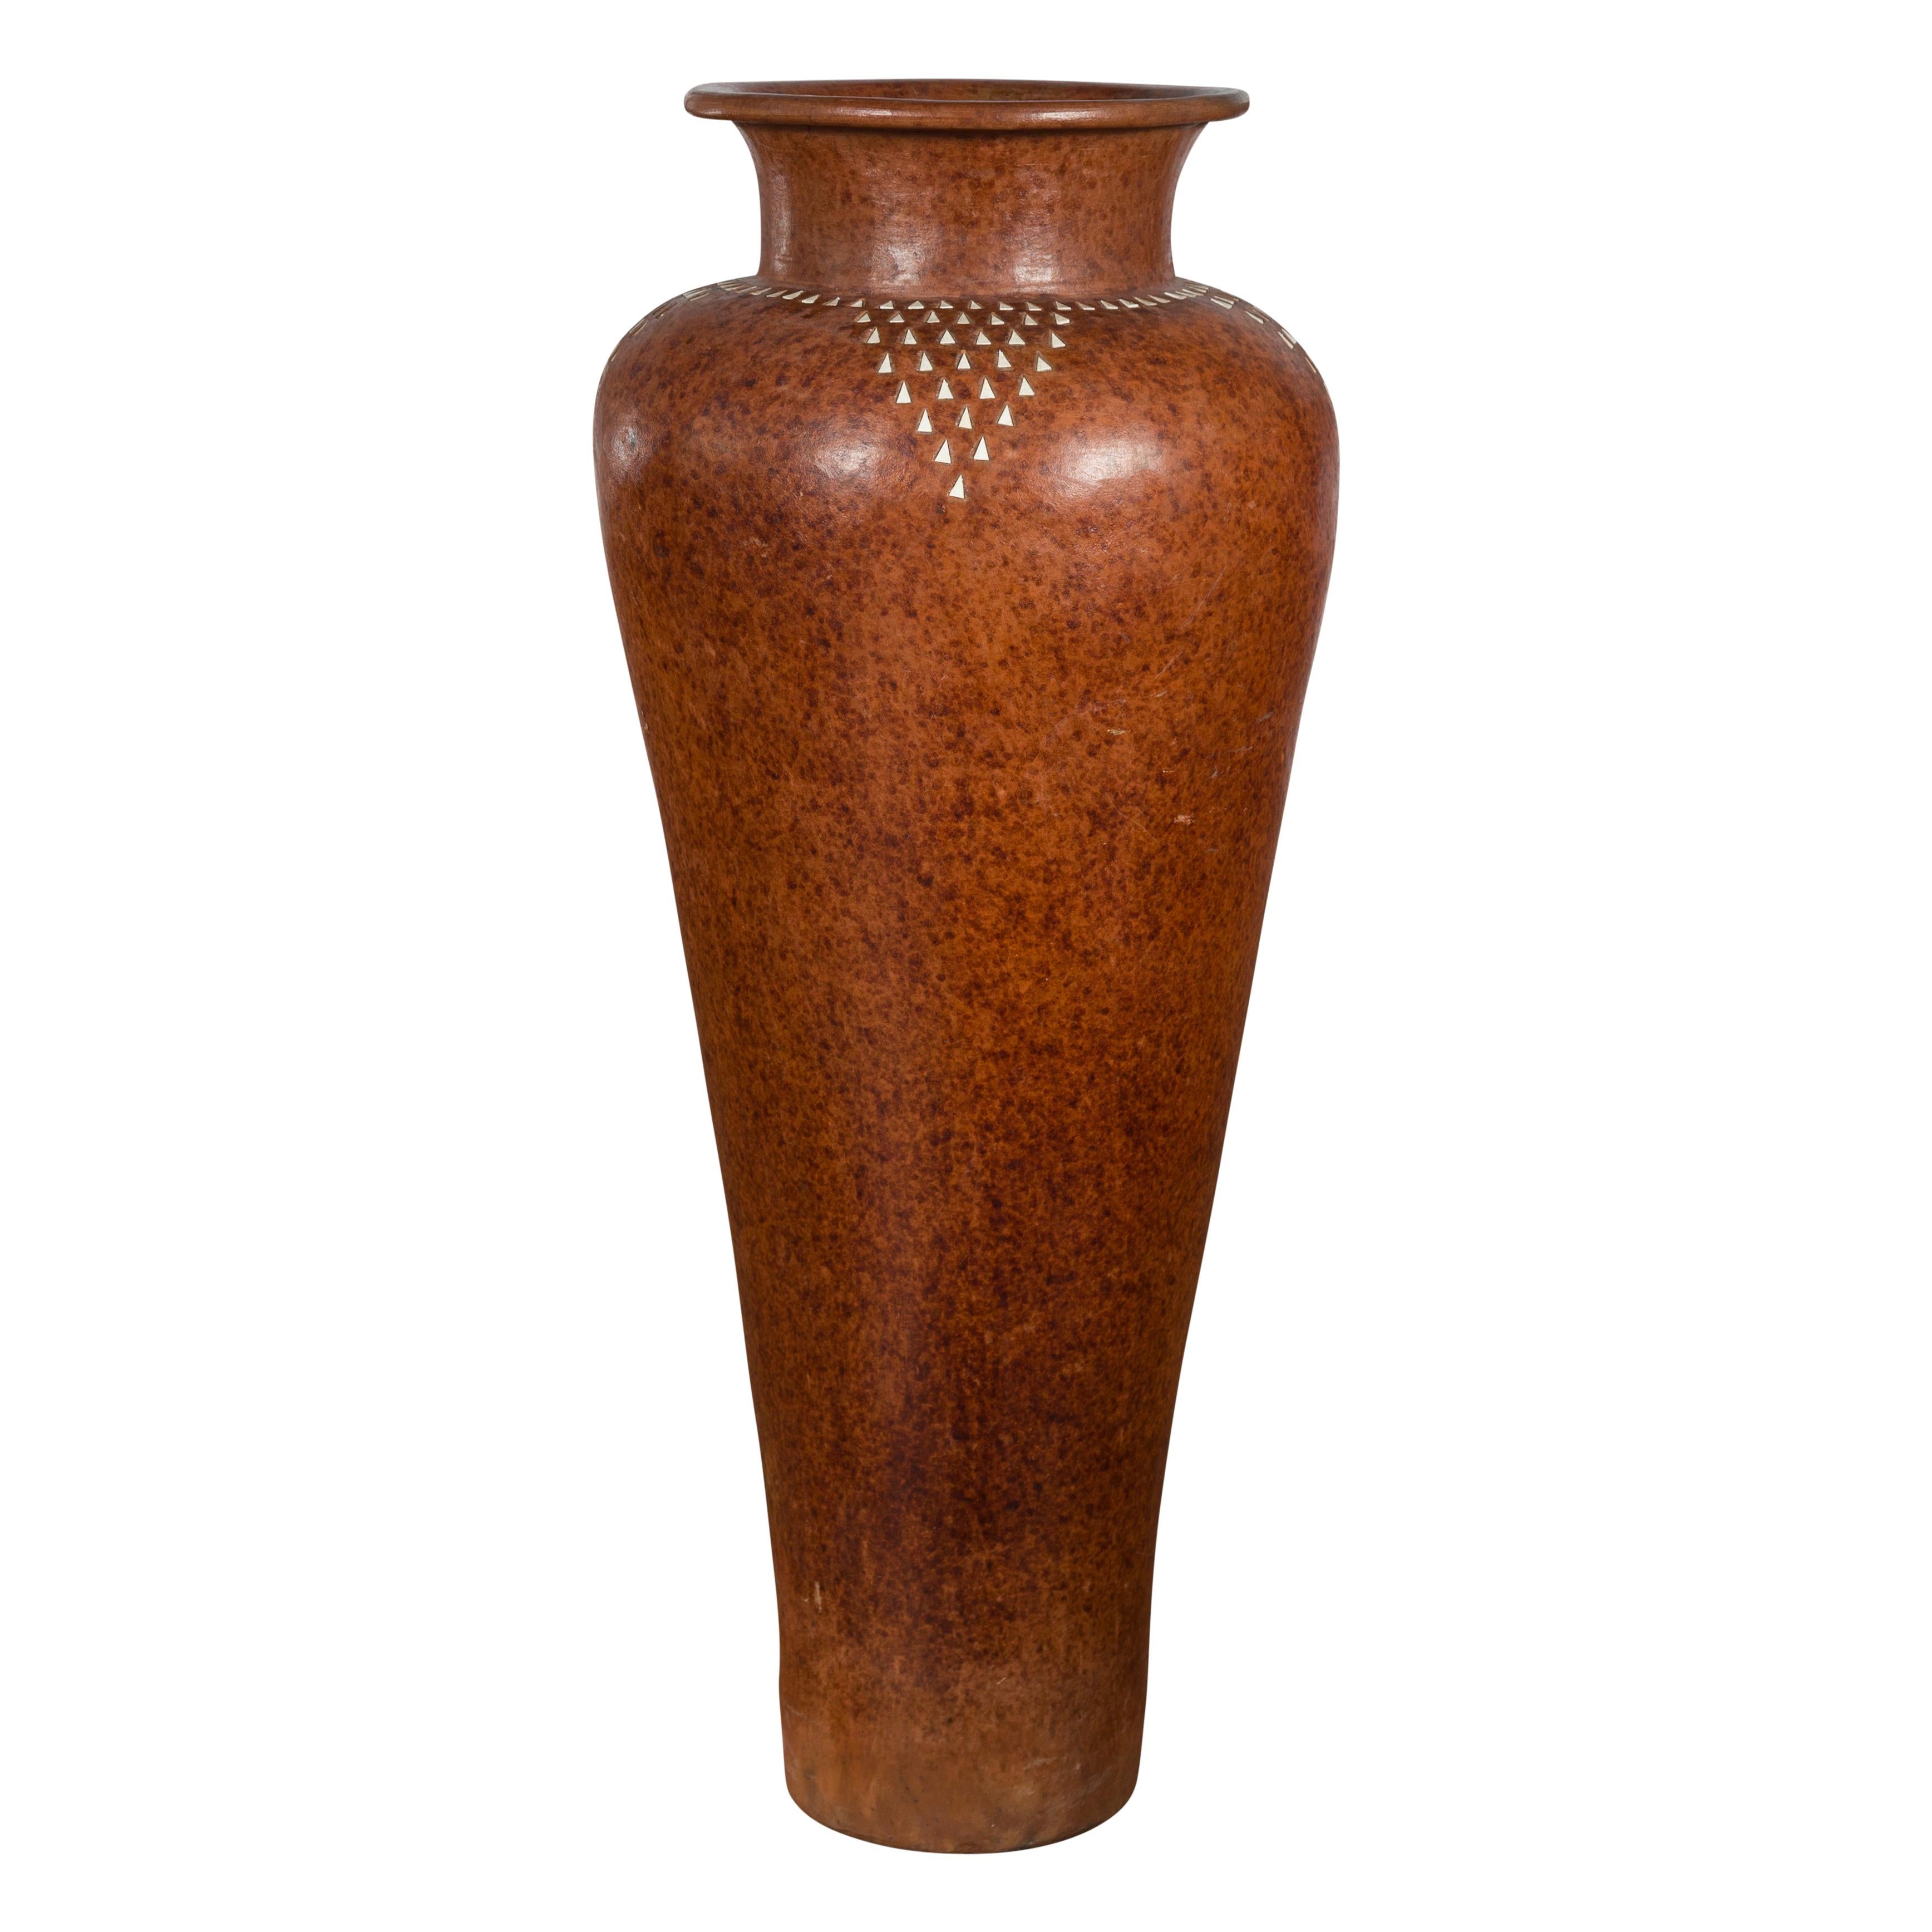 Grand vase asiatique vintage en céramique fabriqué à la main au milieu du 20e siècle, à la silhouette élancée et aux motifs triangulaires blancs incrustés. Créé en Asie au milieu du siècle dernier, ce vase vintage attire l'attention par ses